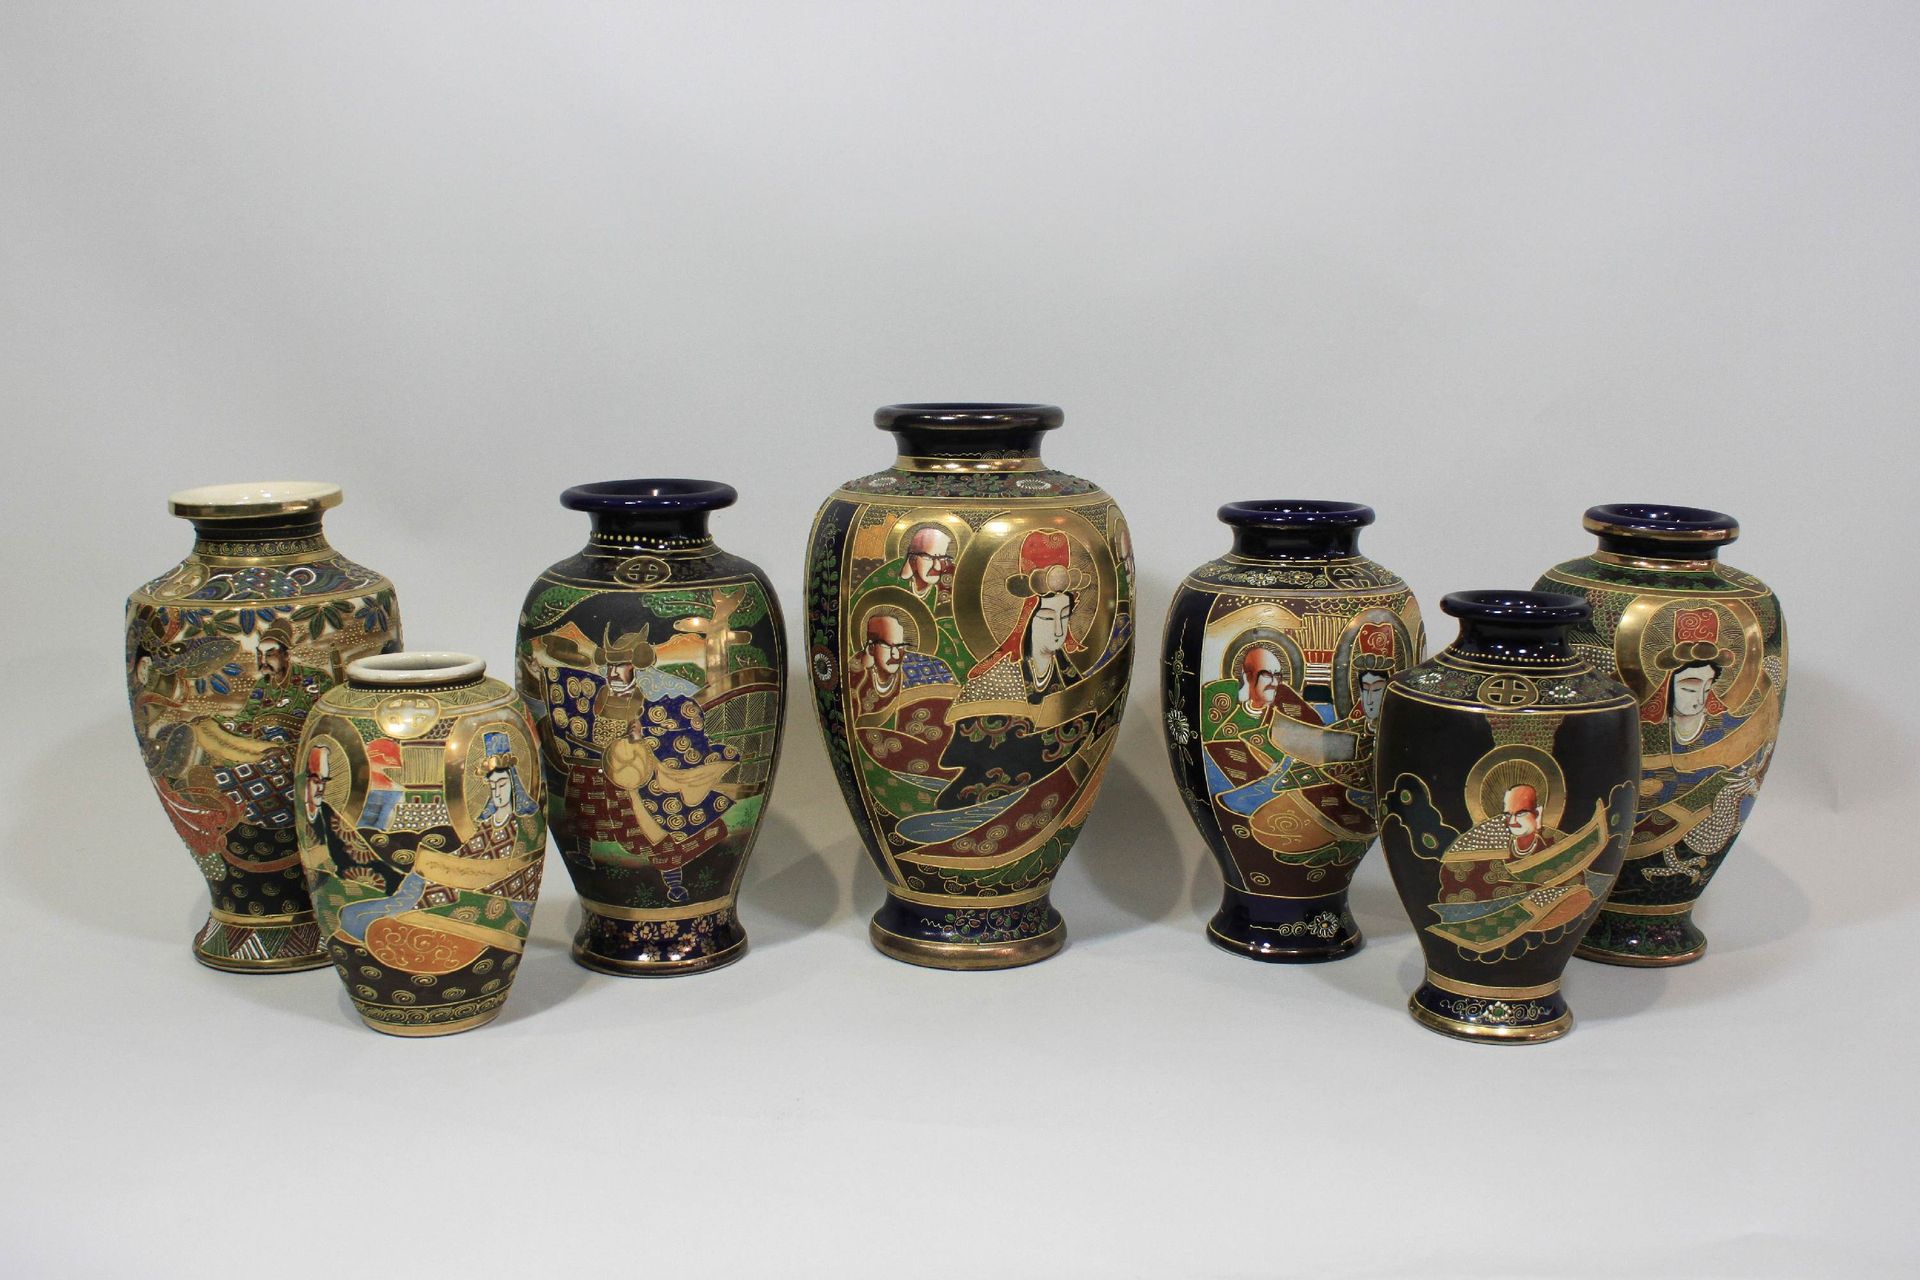 7个花瓶，日本，萨摩瓷器，金或蓝地，多色绘画，人物场景，底部有各种